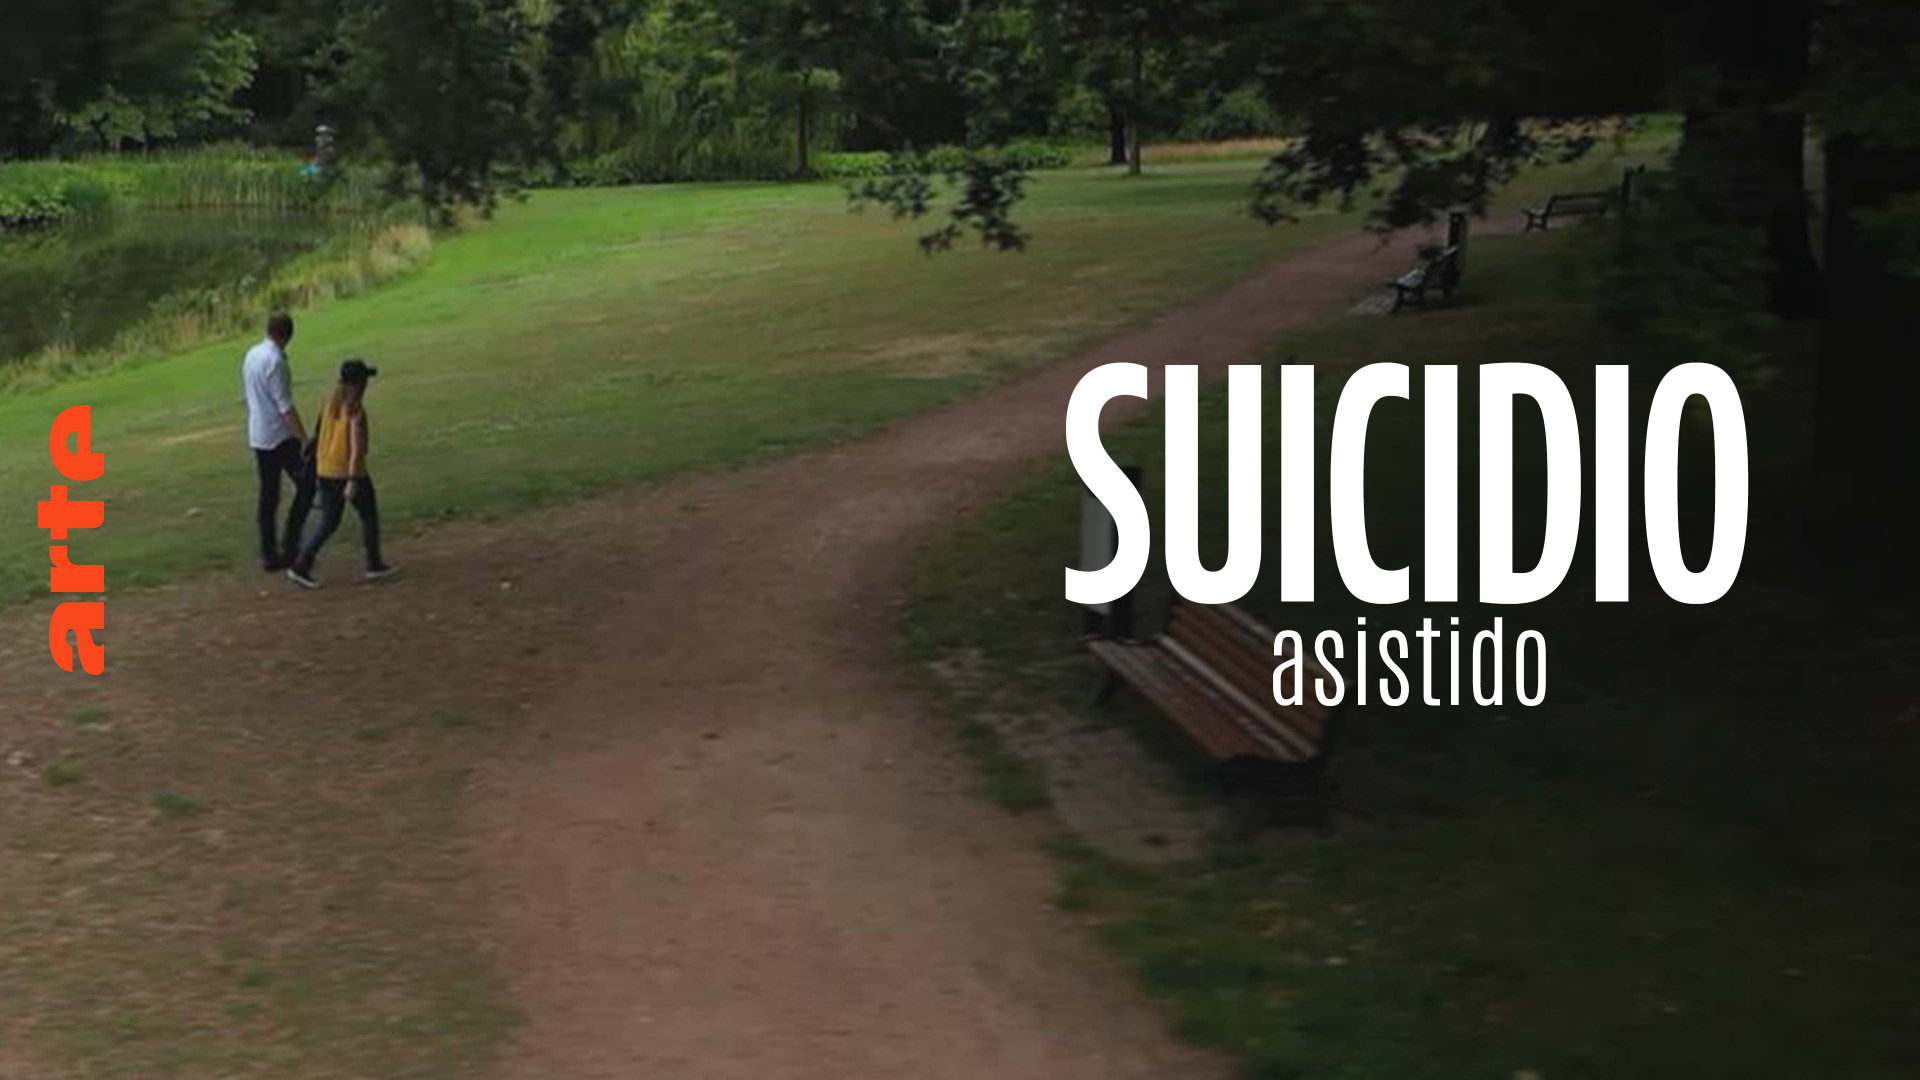 ARTE Regards: Suicidio asistido